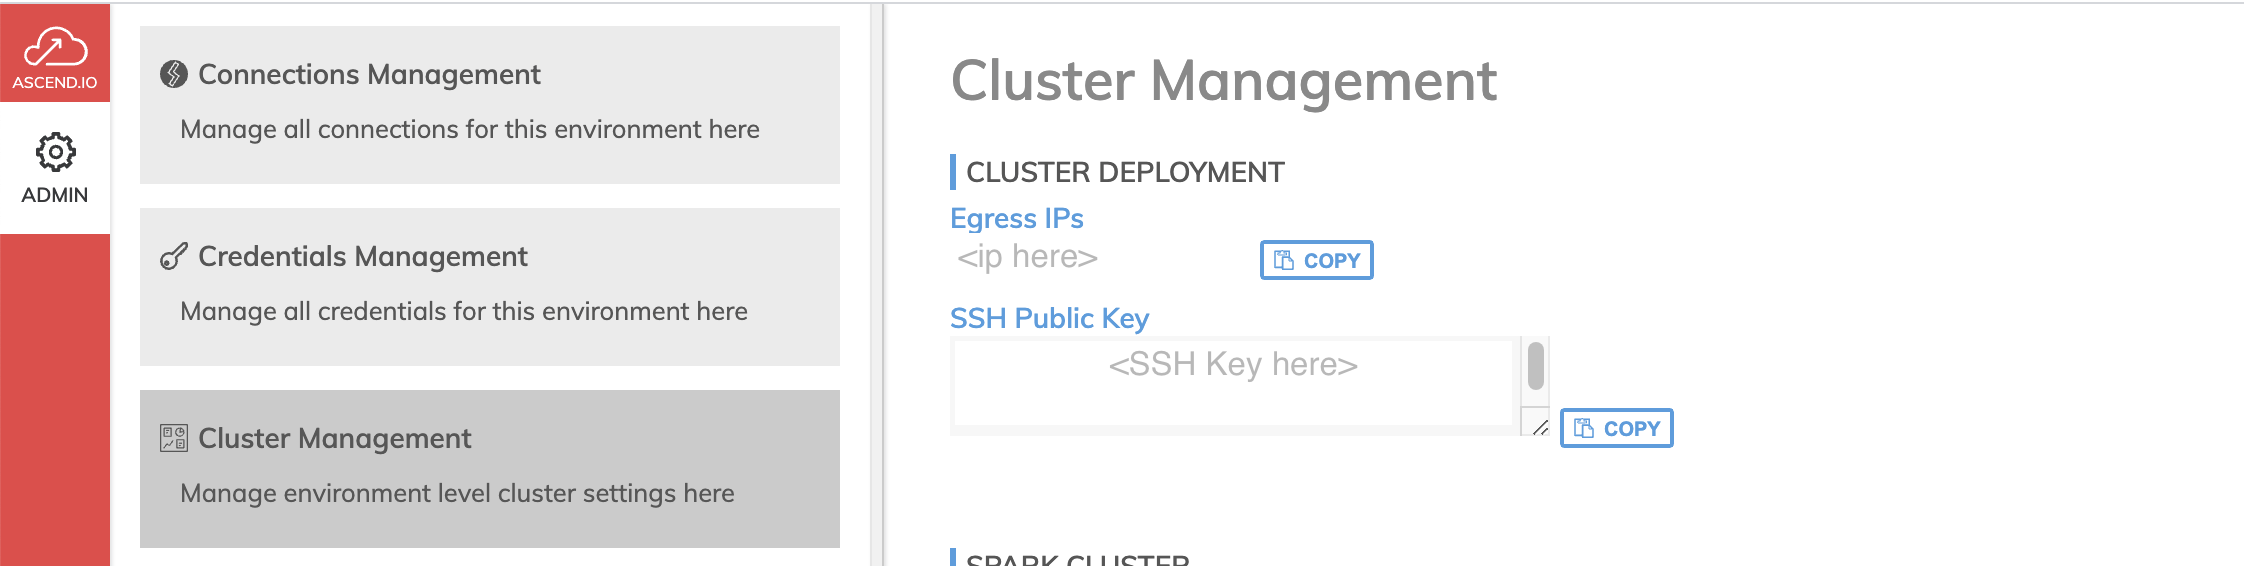 SSH Public Key location on Cluster Management Menu